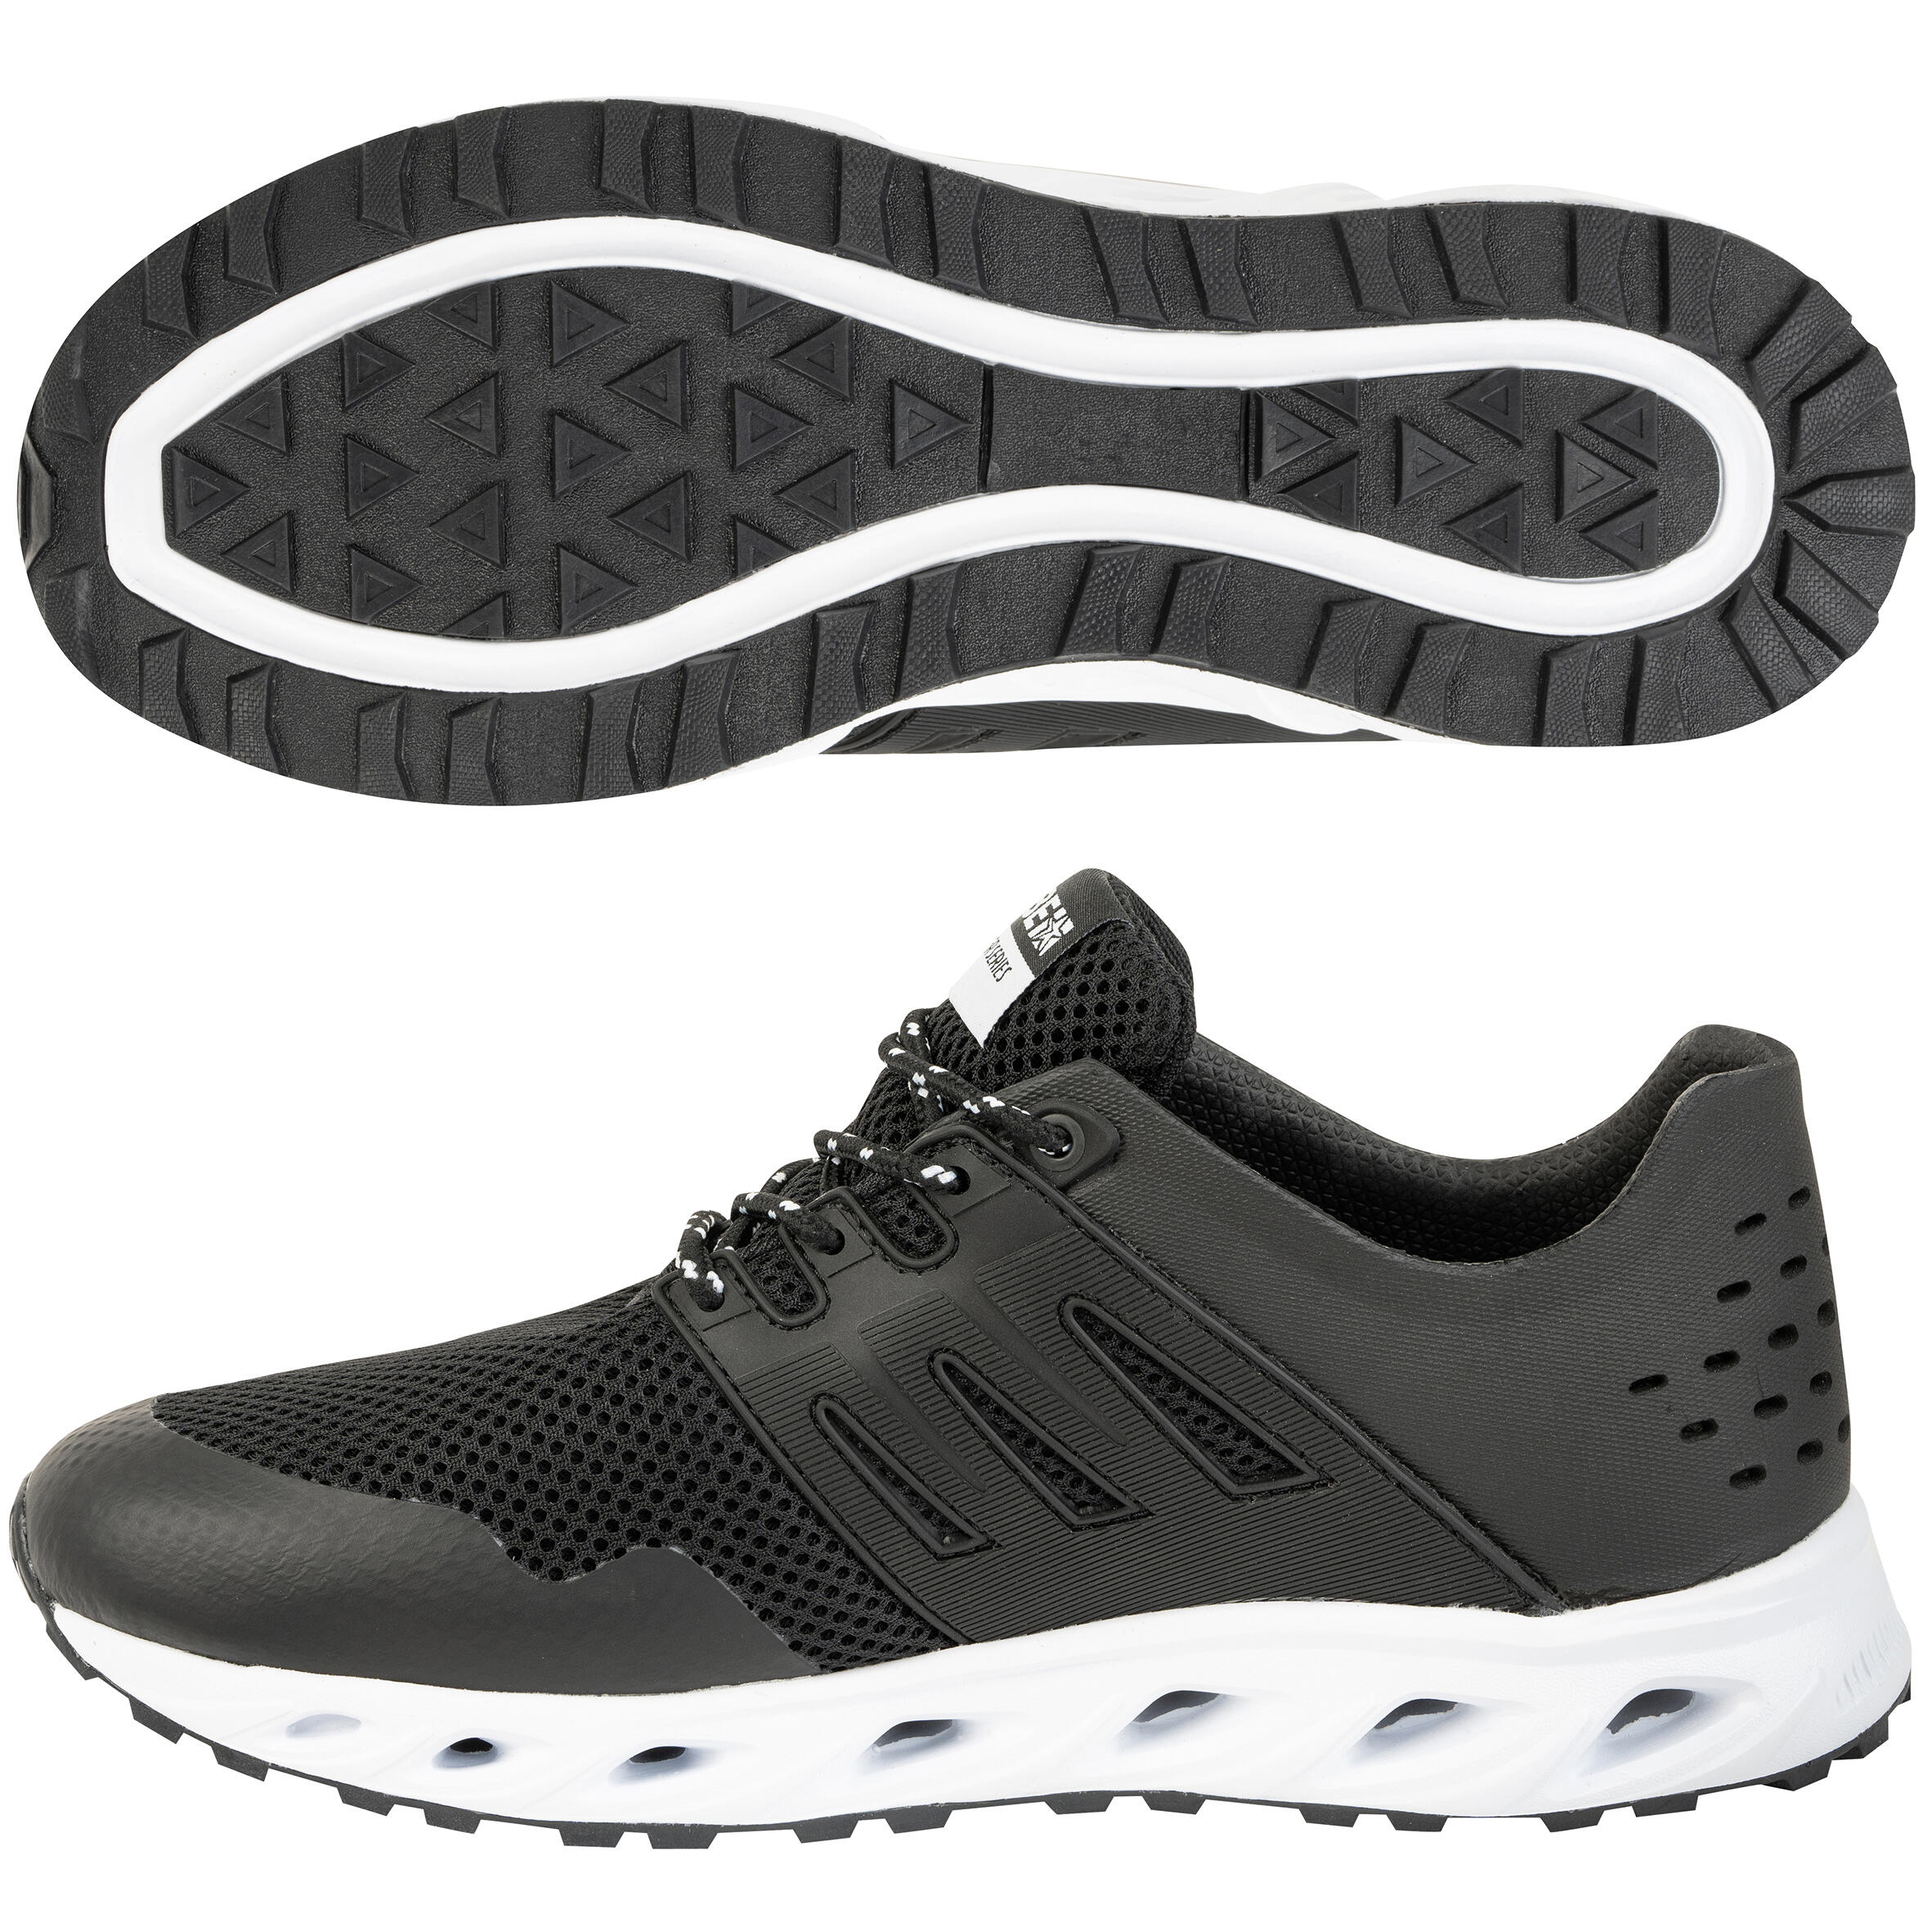 Aquatic shoes Aquashoes Adult - Discover Sneaker Black 3/7